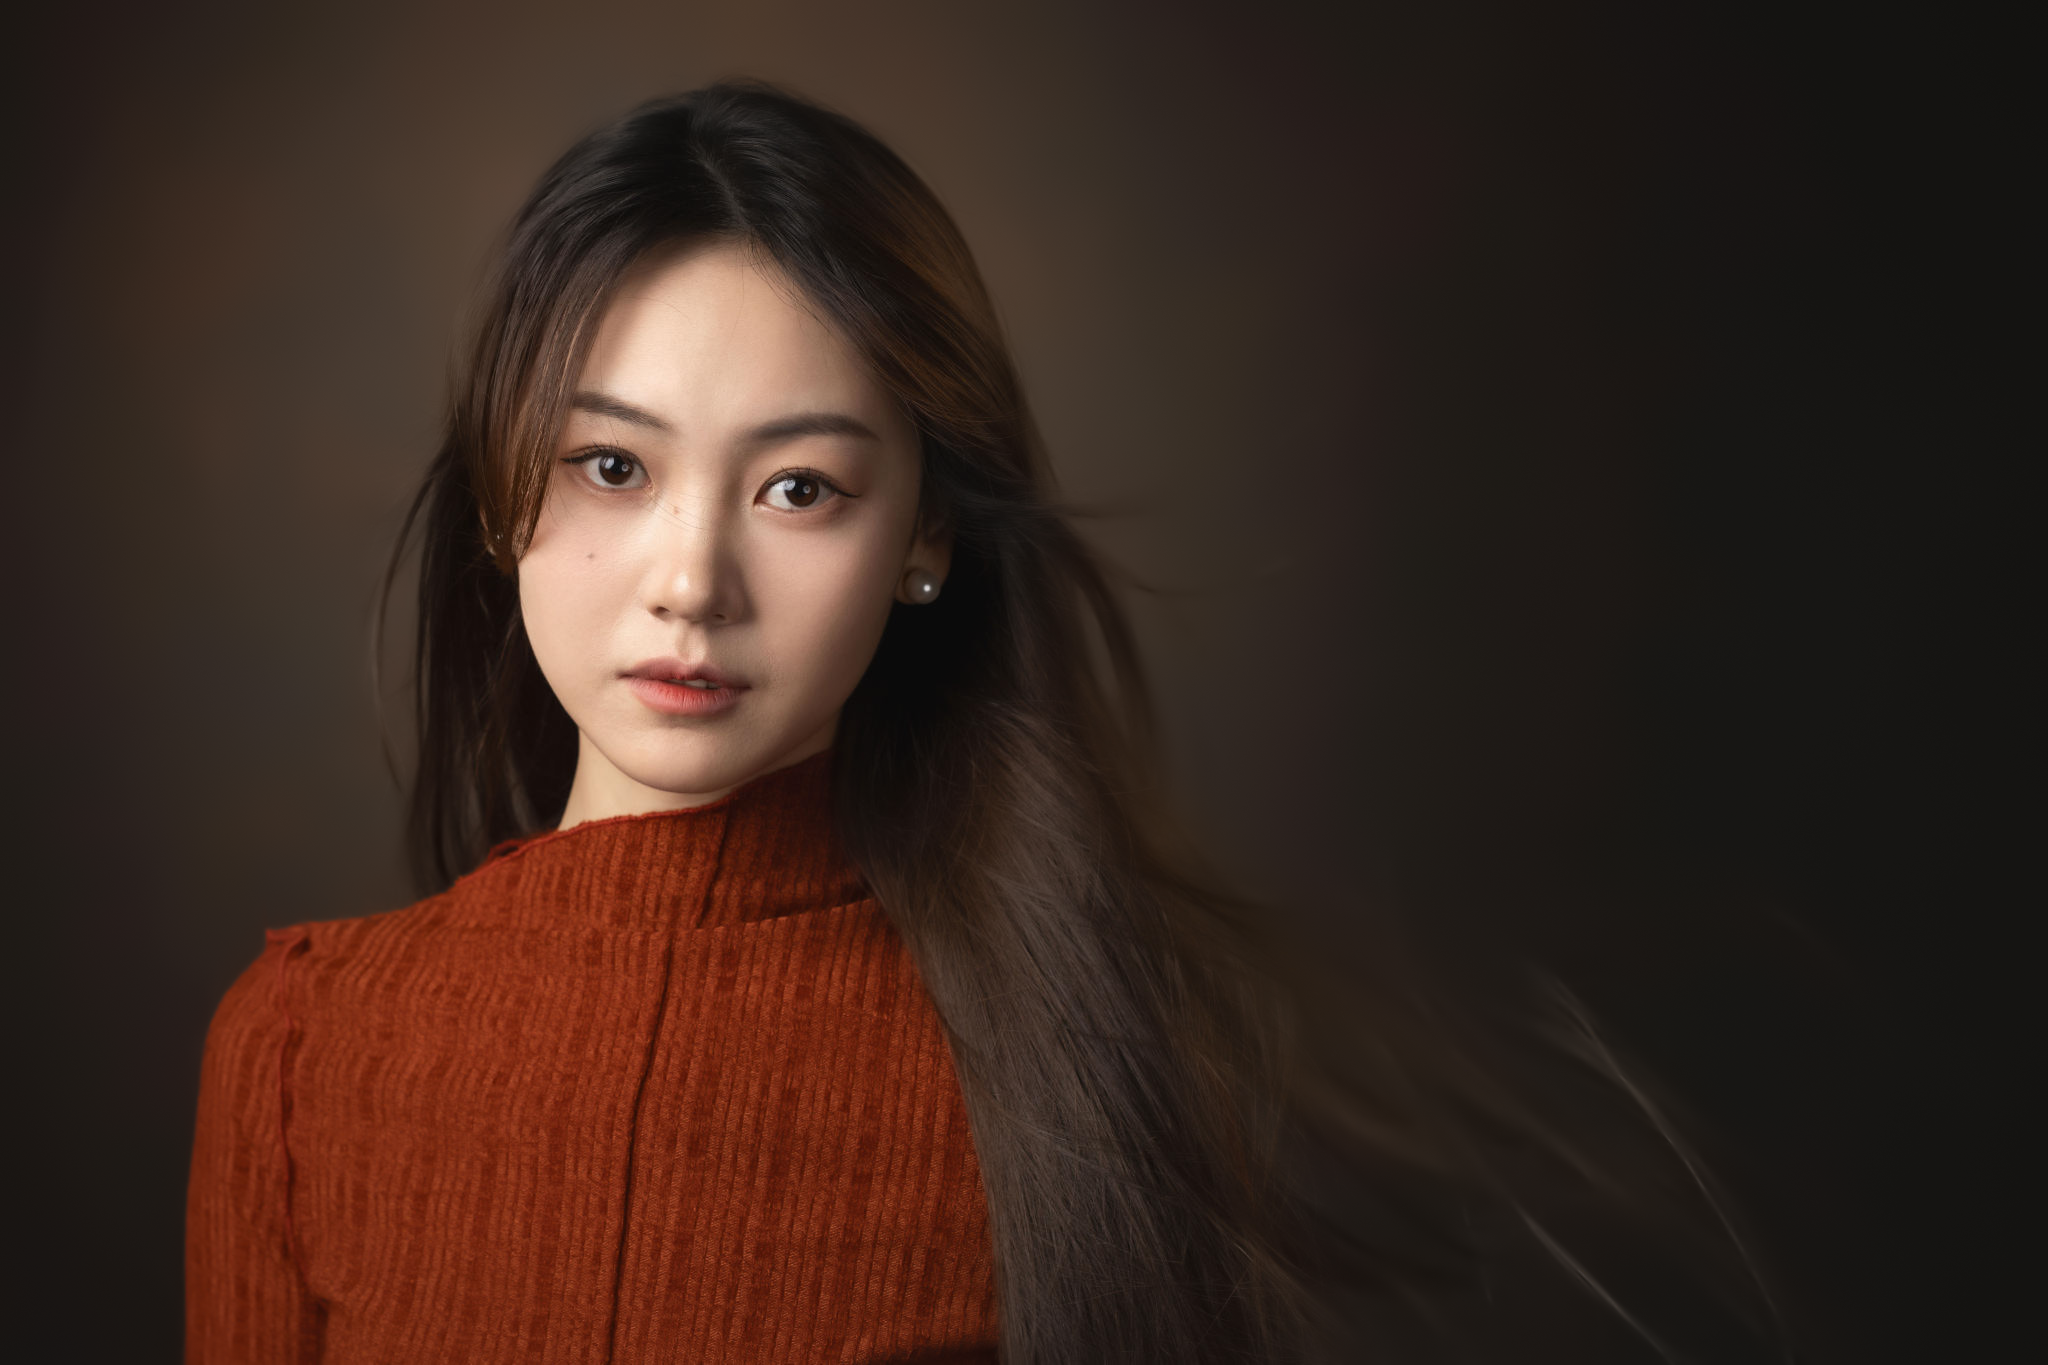 People 2048x1365 Lee Hu women brunette Asian sweater portrait model studio